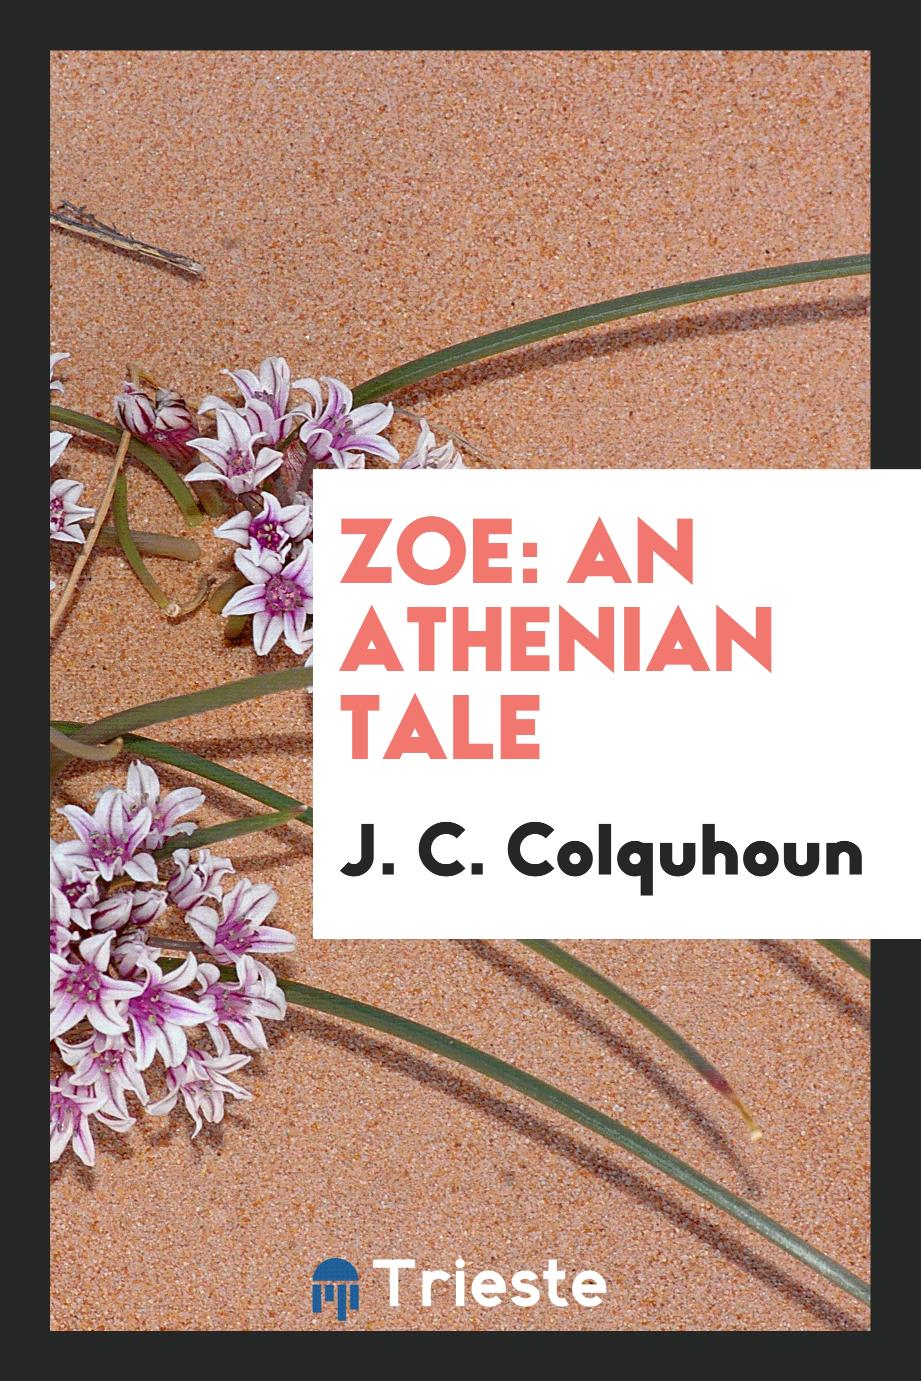 Zoe: An Athenian Tale